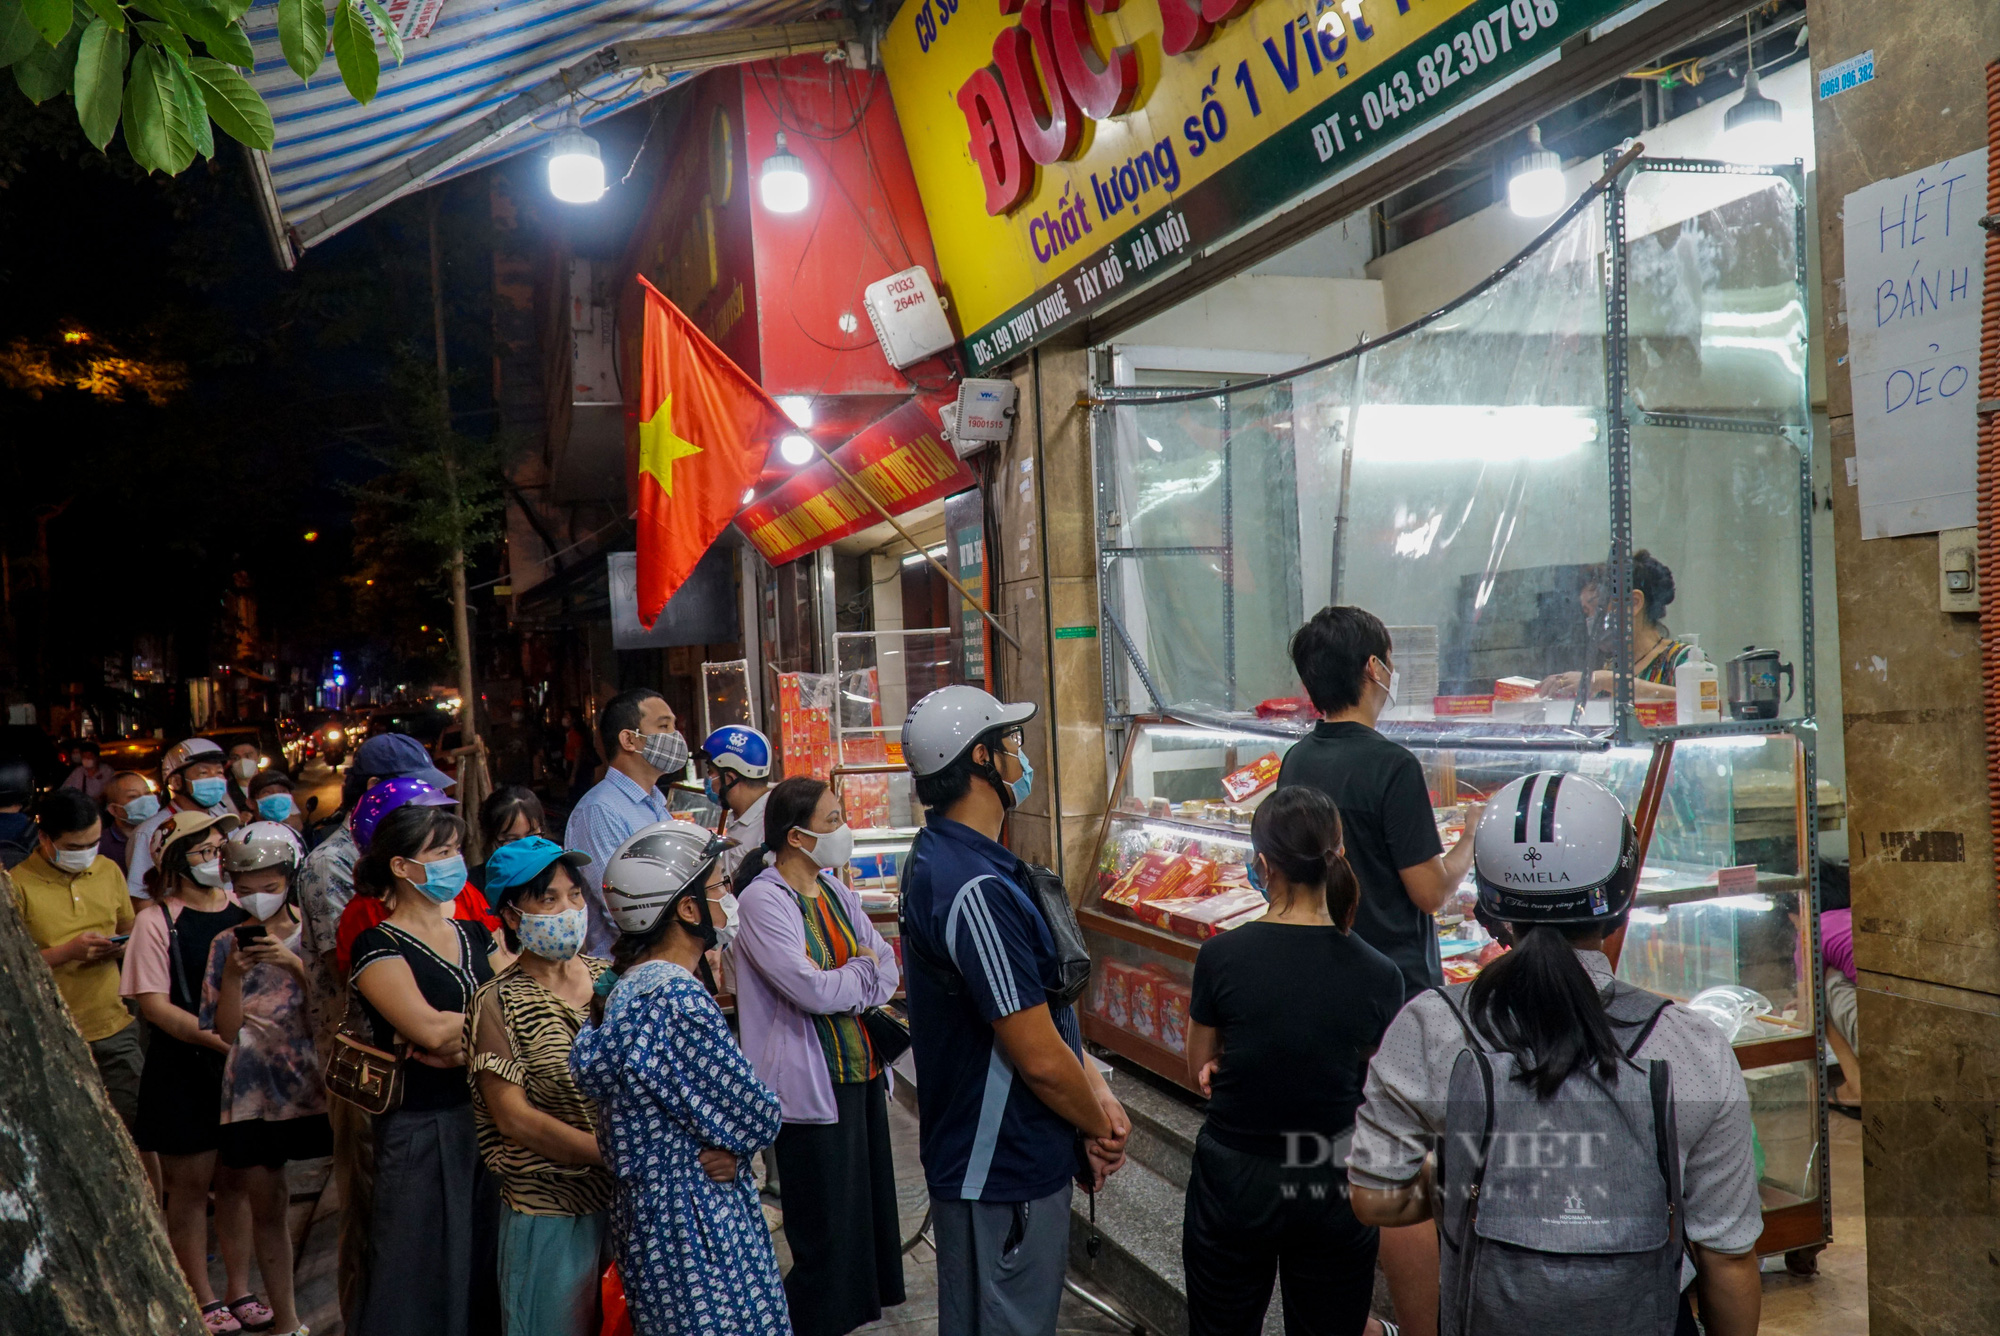 Bánh trung thu: Năm nay, các thương hiệu bánh trung thu Việt Nam đã cập nhật những hương vị mới mẻ và phong cách độc đáo với mong muốn để cạnh tranh và thu hút khách hàng. Hãy thưởng thức bánh trung thu Việt Nam để cảm nhận được sự đa dạng và sáng tạo của các sản phẩm này.